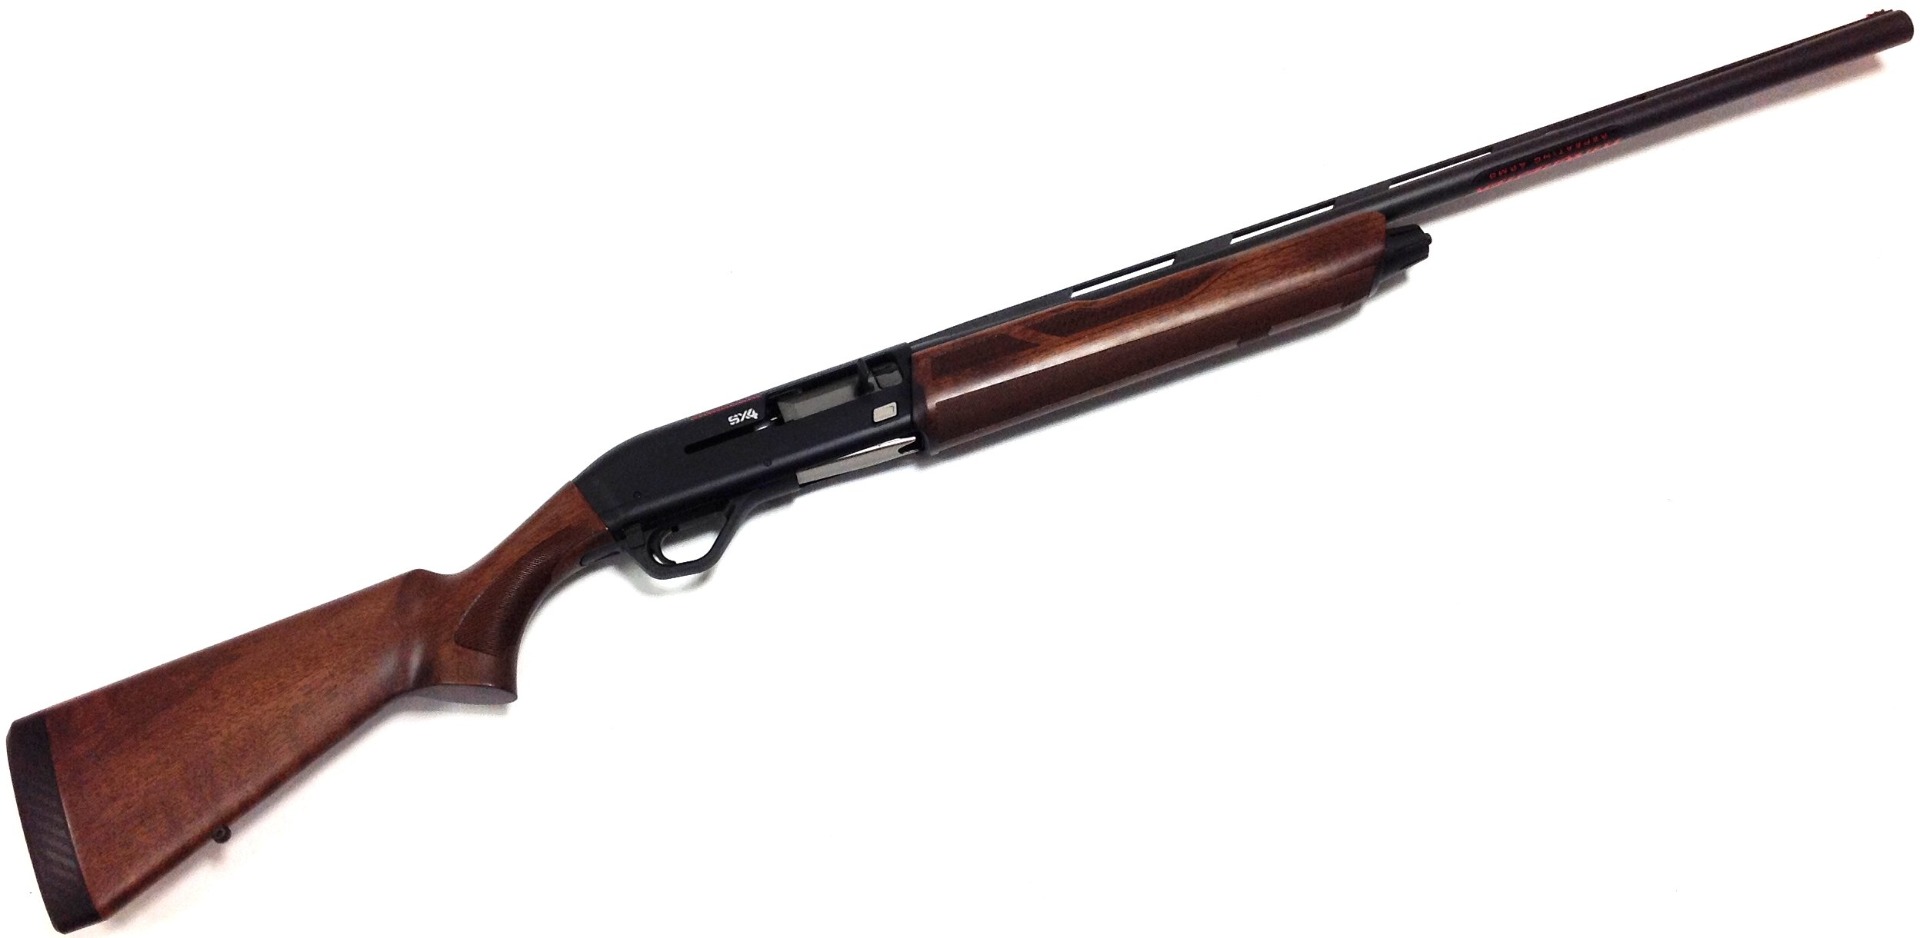 Winchester SX4 Field wooden stock 28" semi-auto shotgun